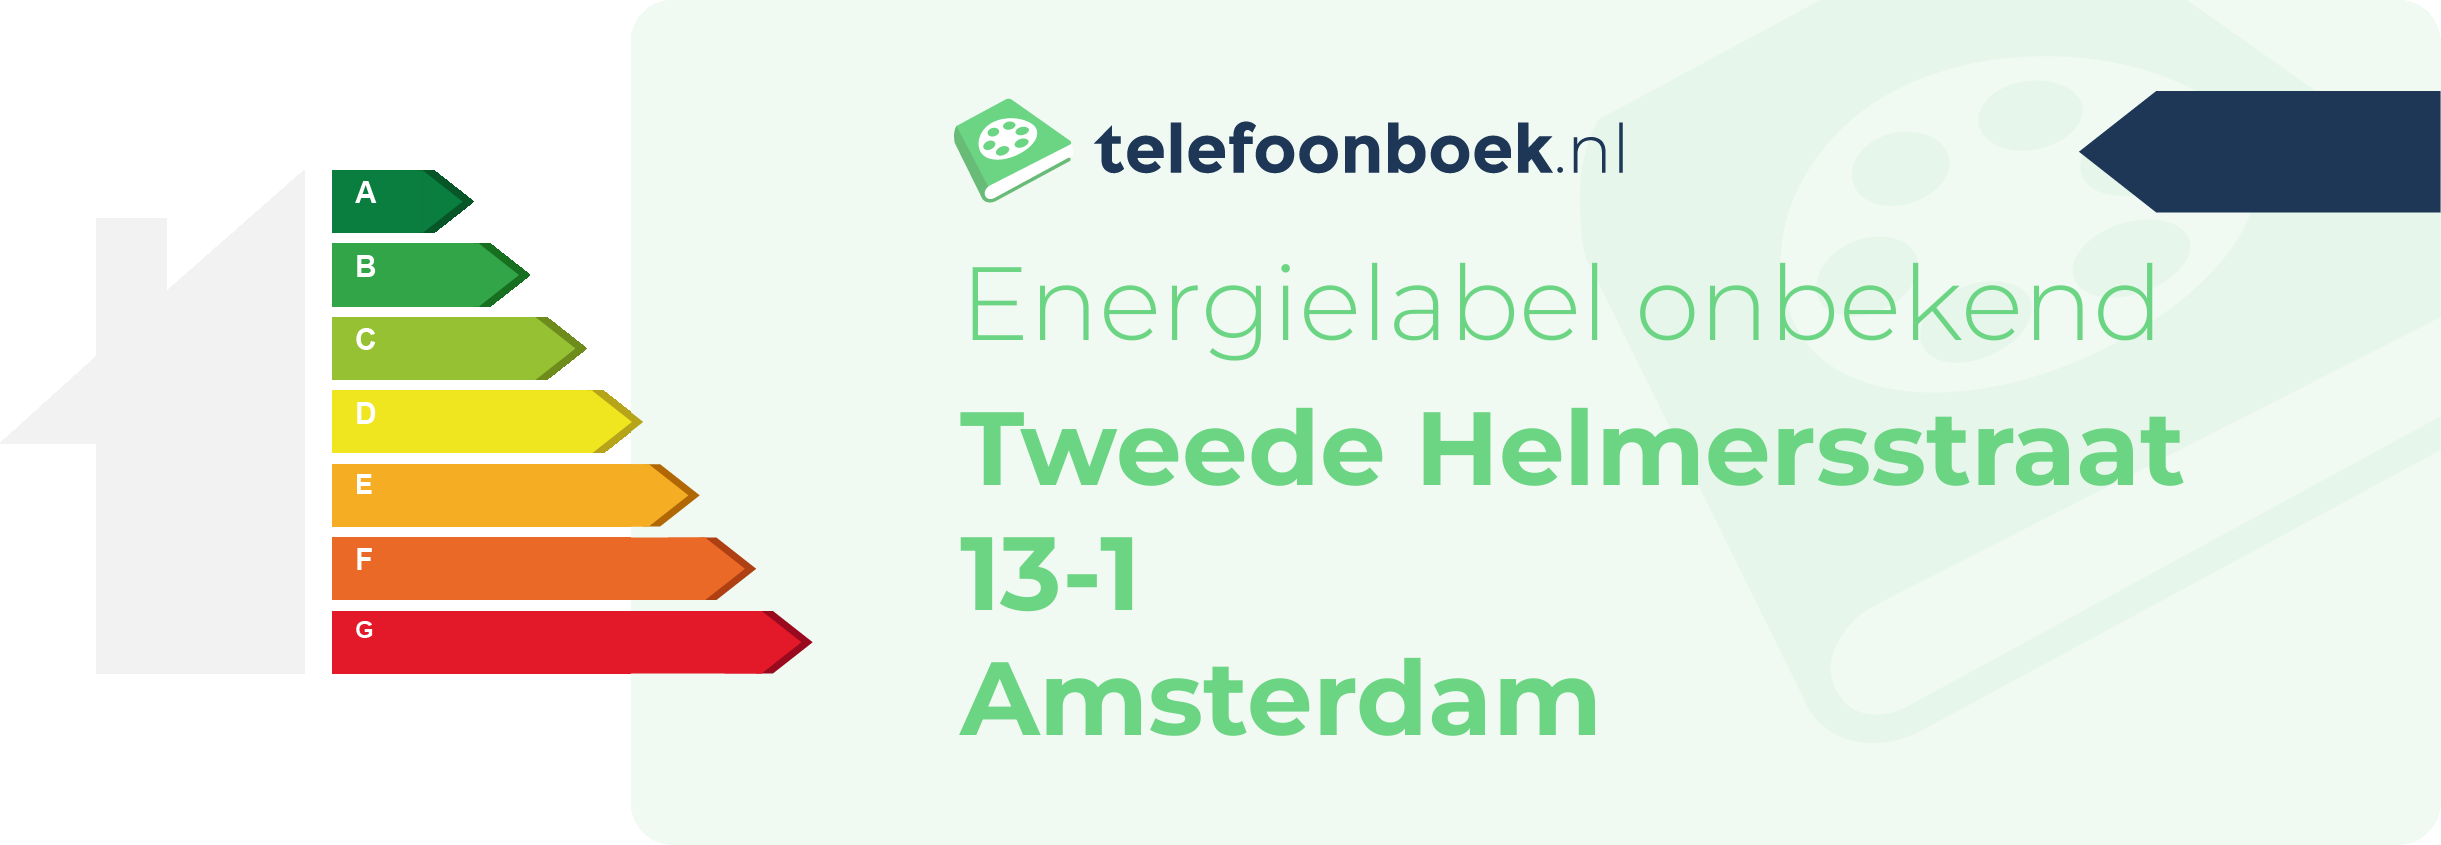 Energielabel Tweede Helmersstraat 13-1 Amsterdam